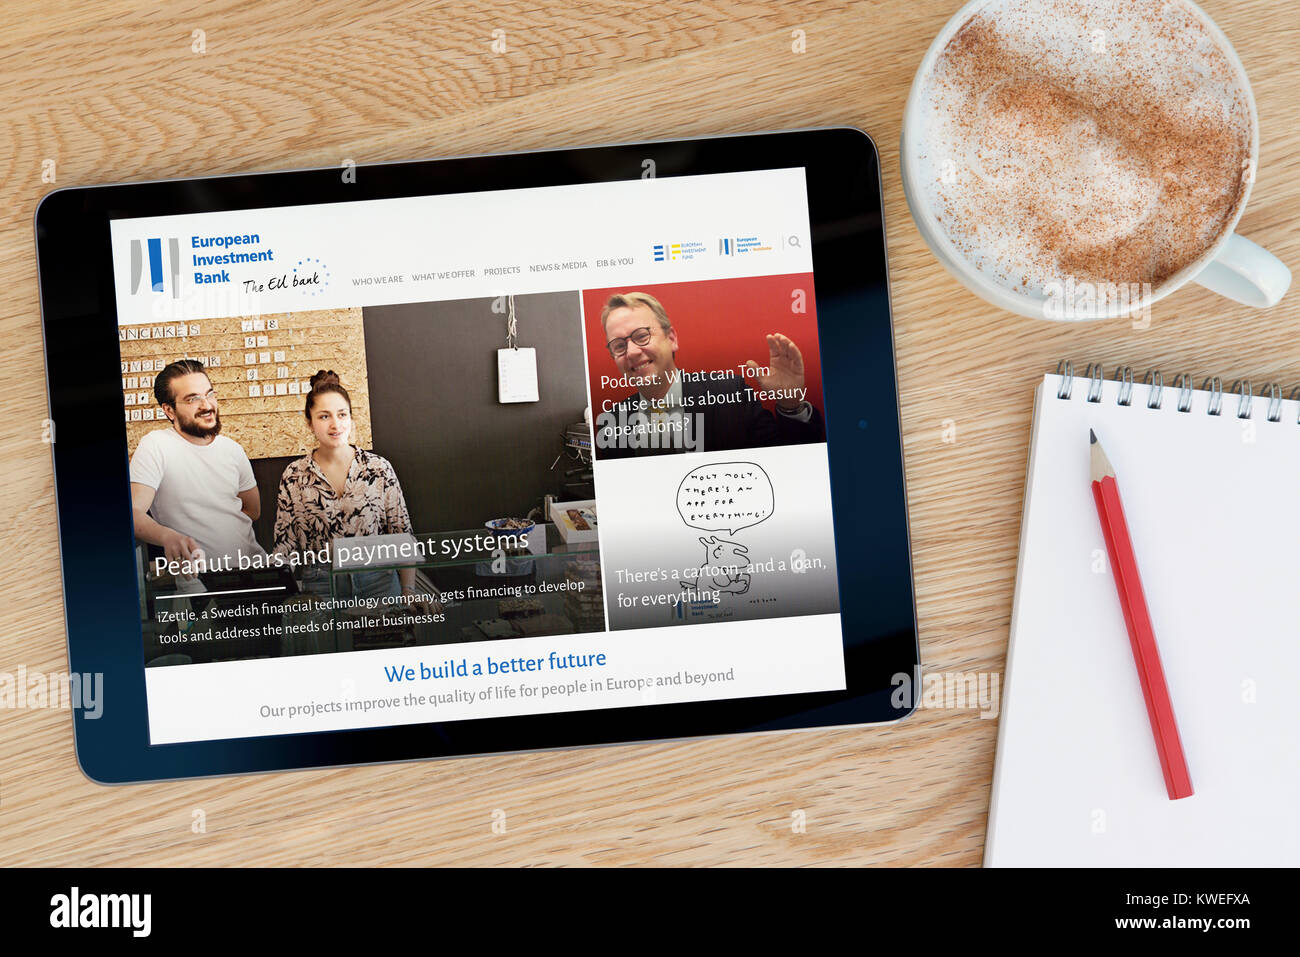 El BEI (Banco Europeo de Inversiones) Sitio web sobre un dispositivo tablet iPad, descansando sobre una mesa de madera junto a una taza de café (Editorial) Foto de stock